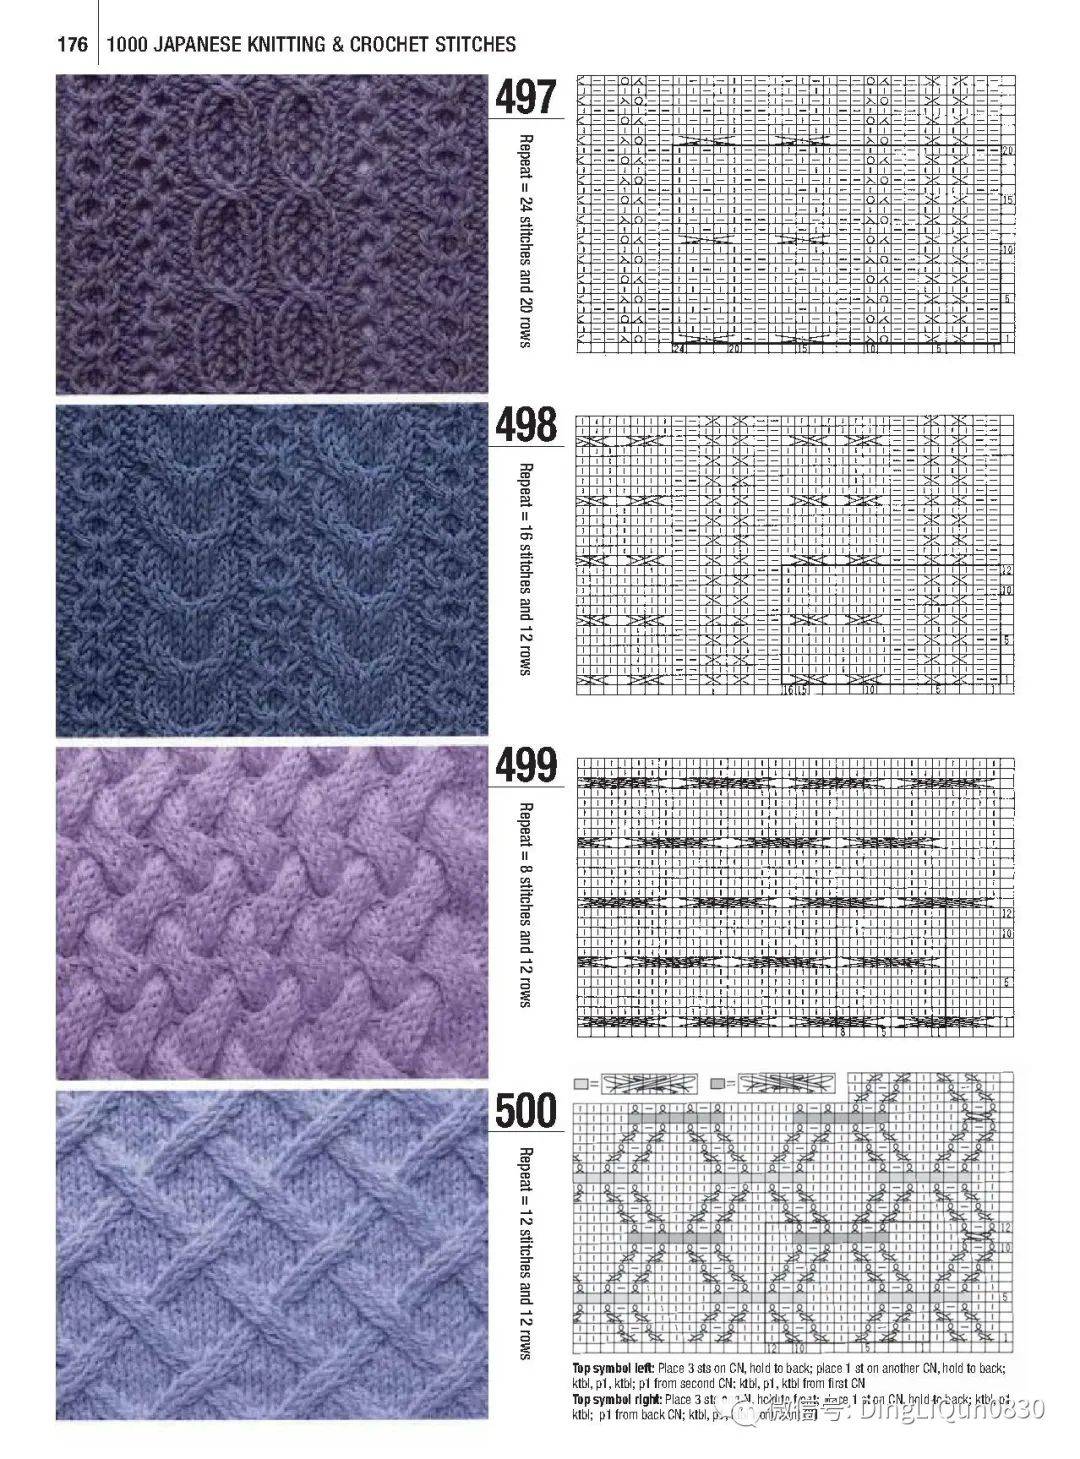 针织图解最新的700个棒针编织图案织毛衣有用下篇